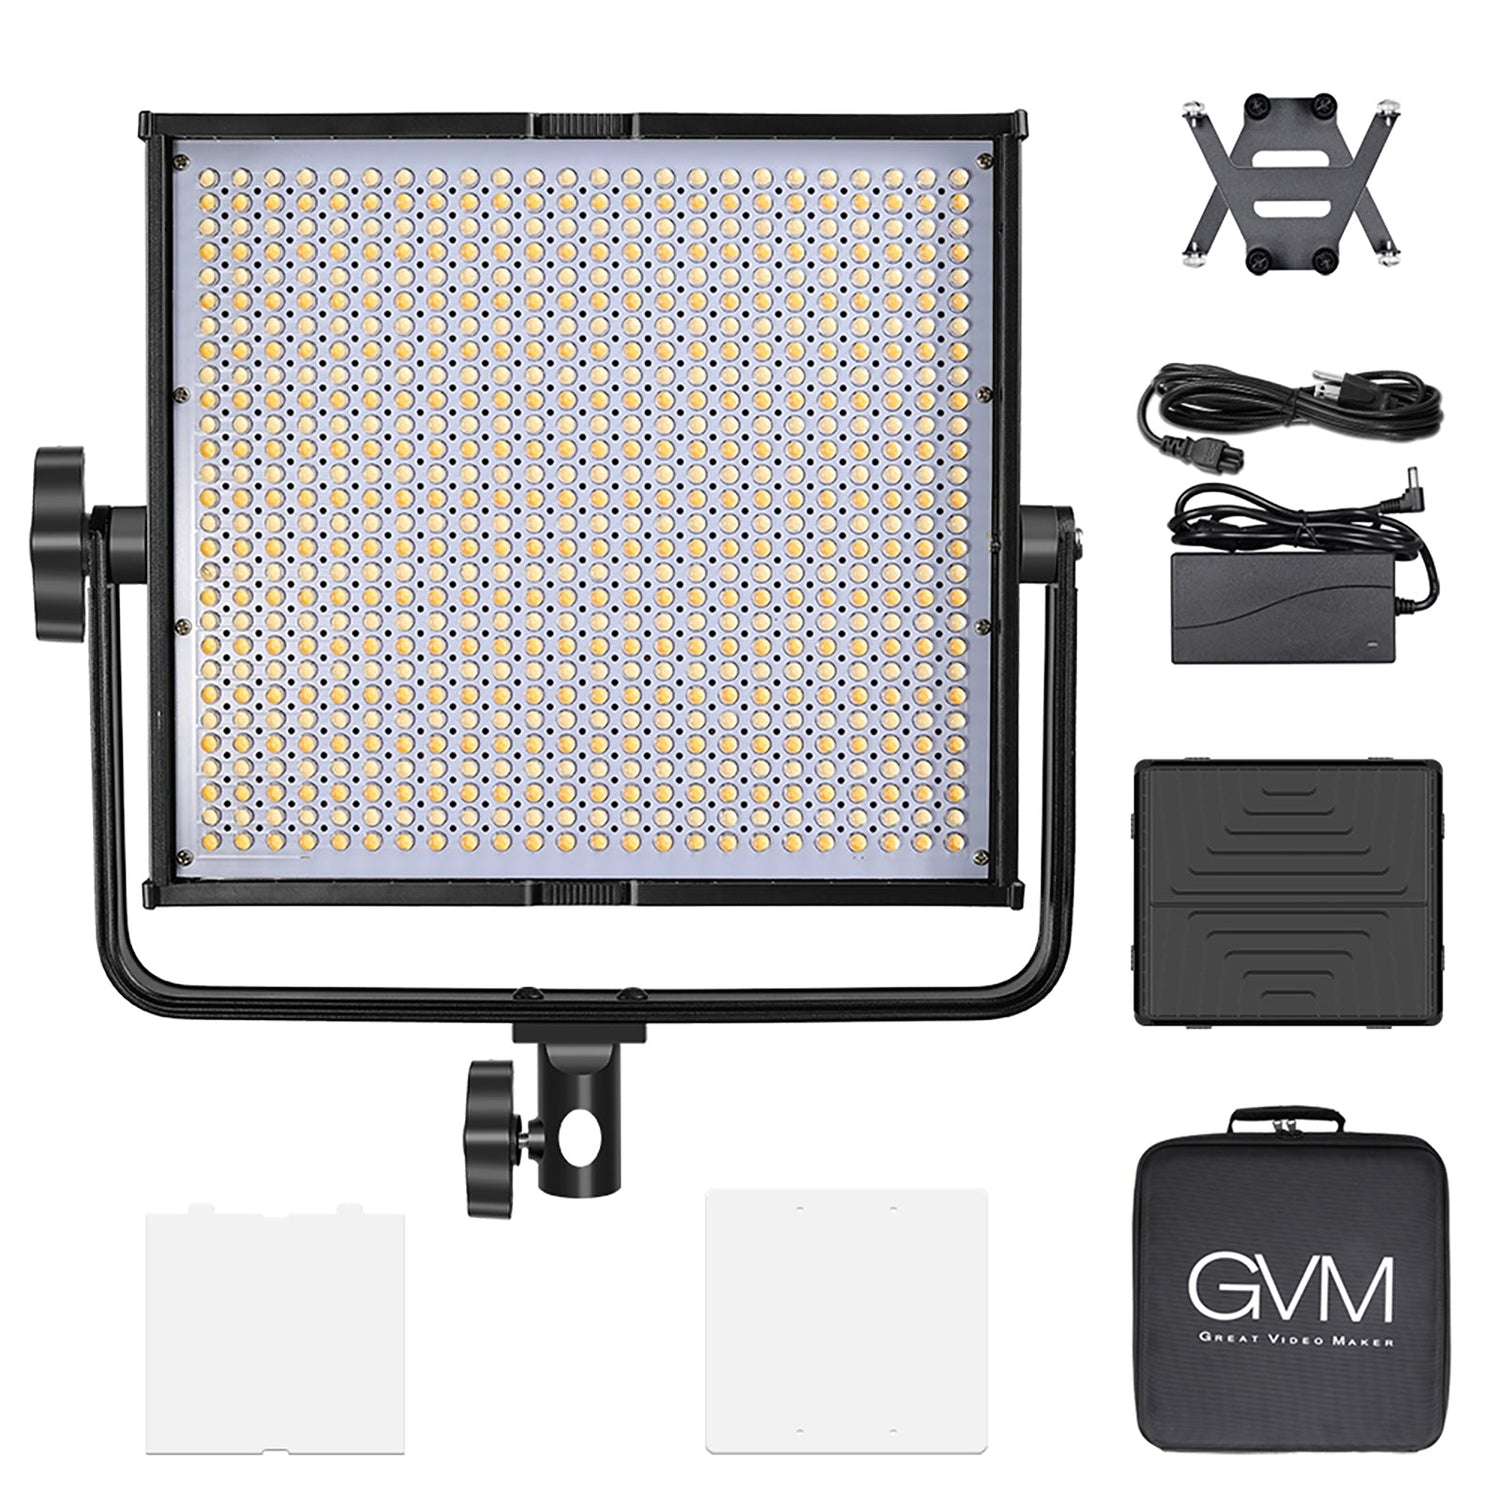 GVM-520S 30W High Beam High Brightness Bi-Color LED VIdeo Soft Light - GVMLED